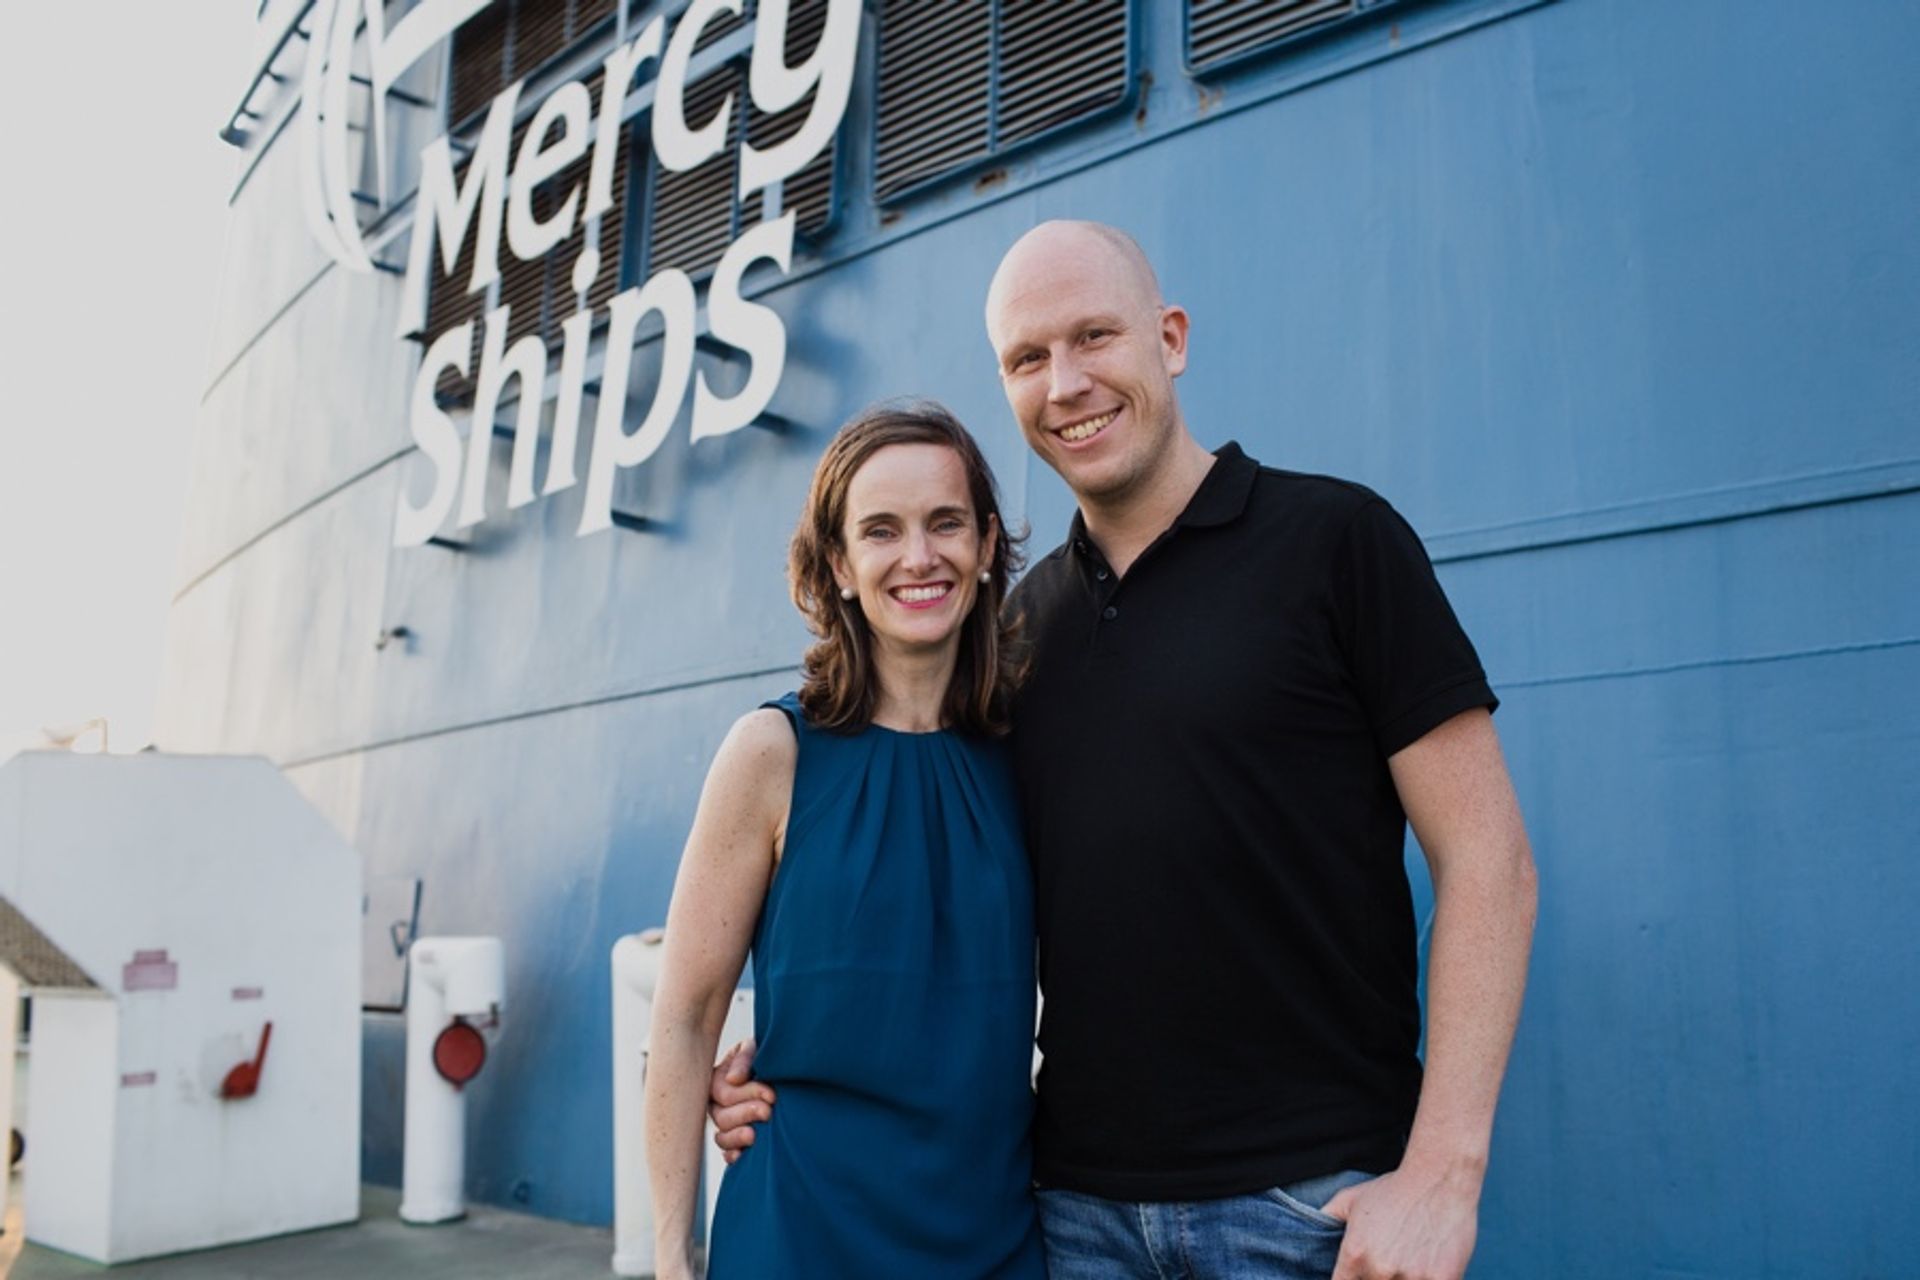 Directeur Marianne Havinga: 'Ik had nog nooit van Mercy Ships gehoord'